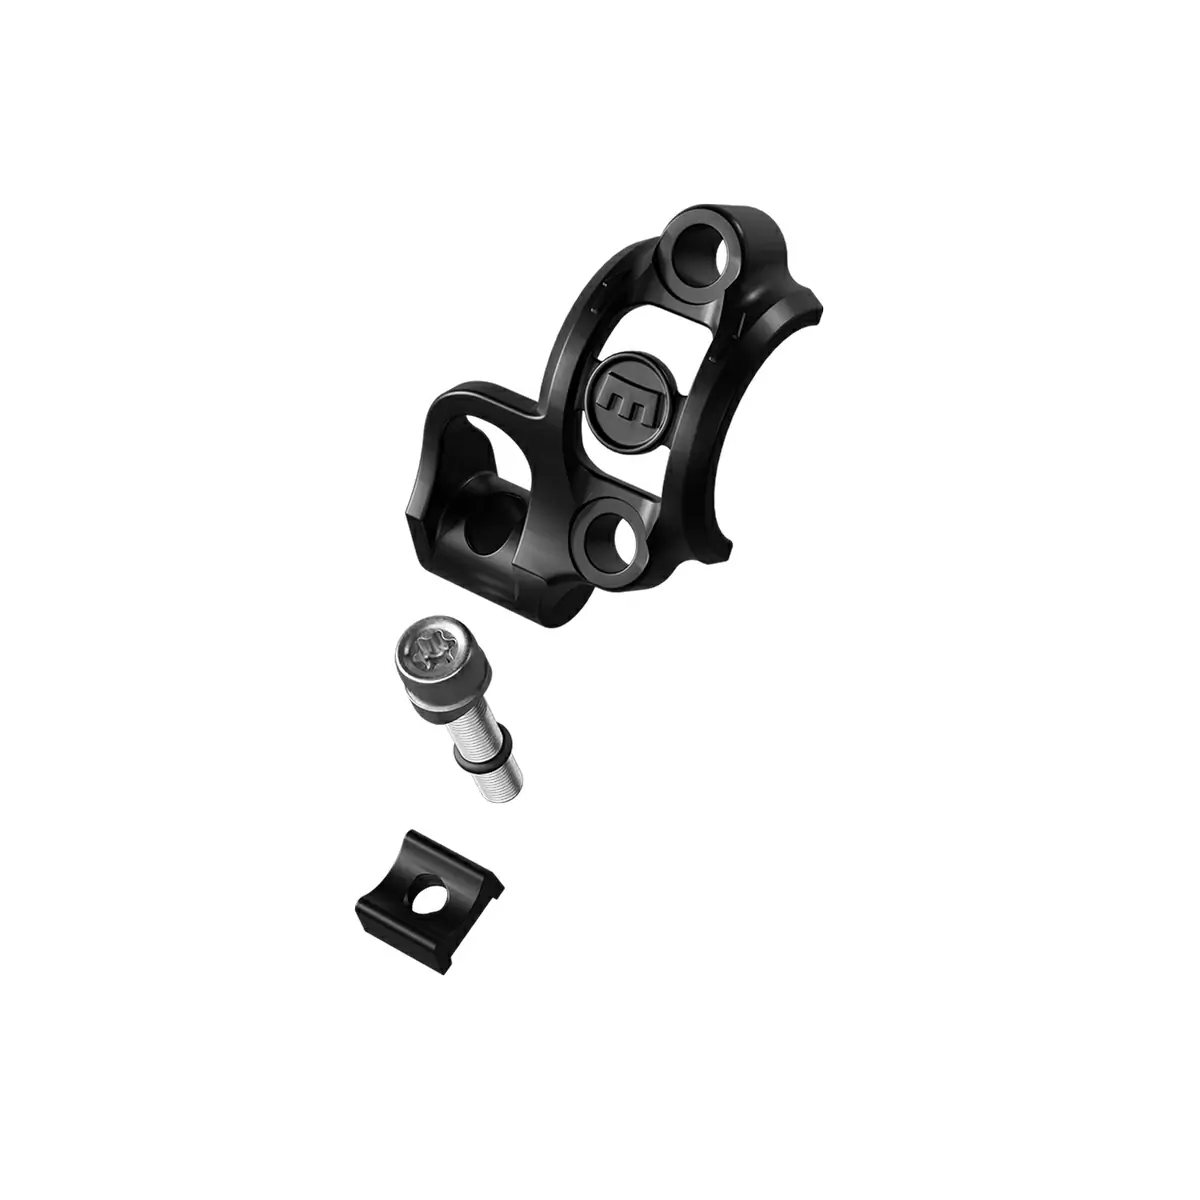 Lenkerklemmung Shiftmix 3 für SRAM Triggerschalter destro nero - image